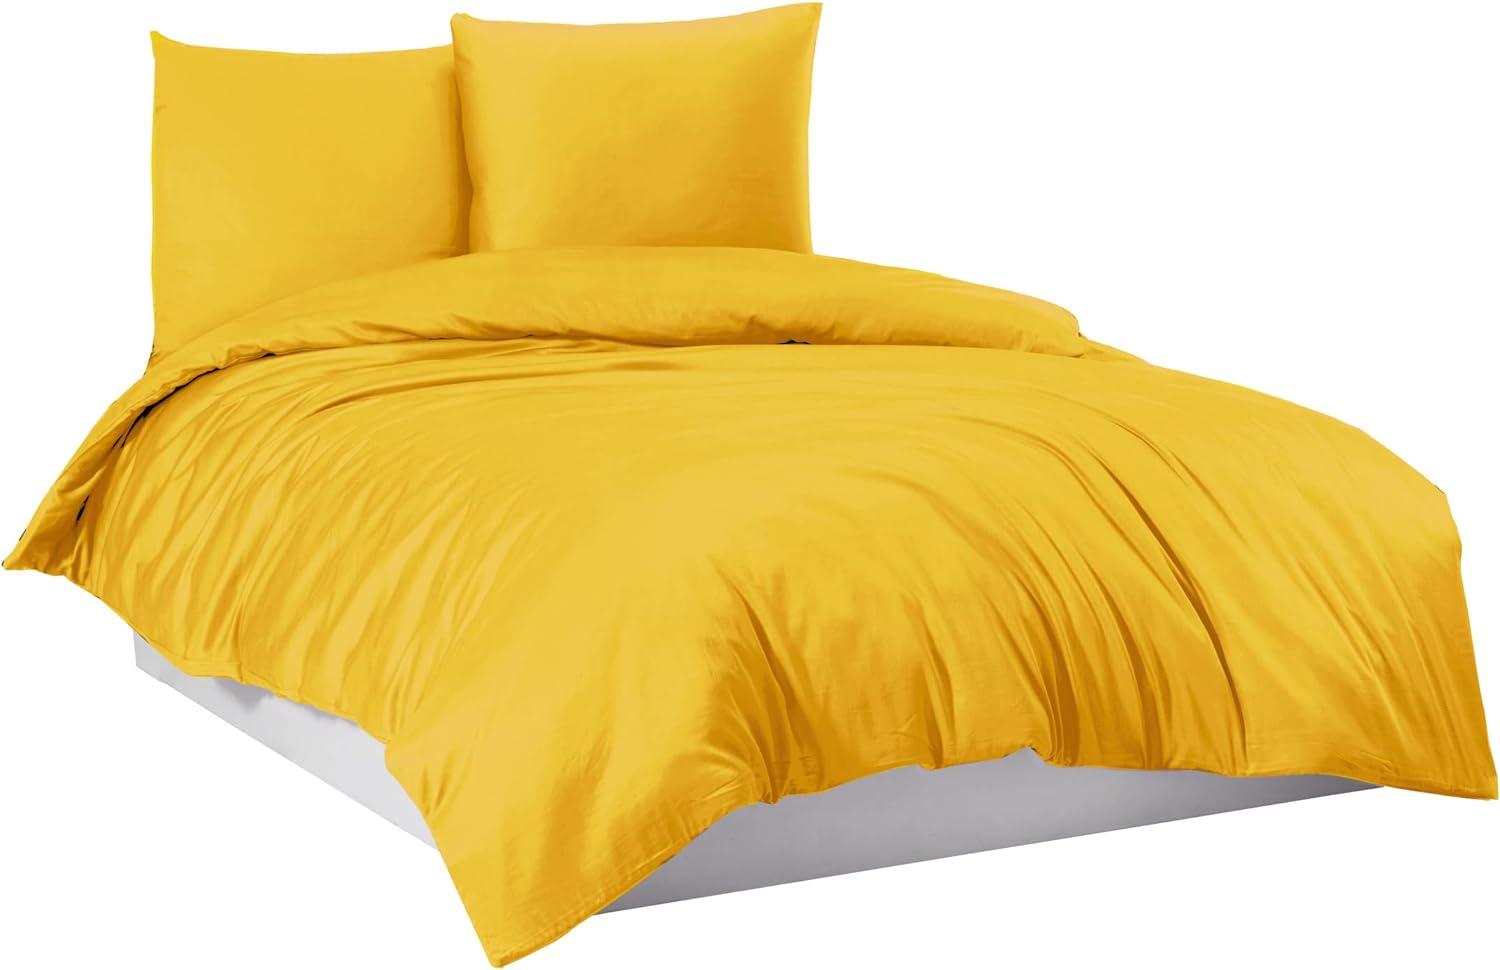 Mixibaby Bettwäsche Bettgarnitur Bettbezug 100% Baumwolle 135x200 155x220 200x200 200x220, Farbe:Gelb, Größe:200 x 220 cm Bild 1